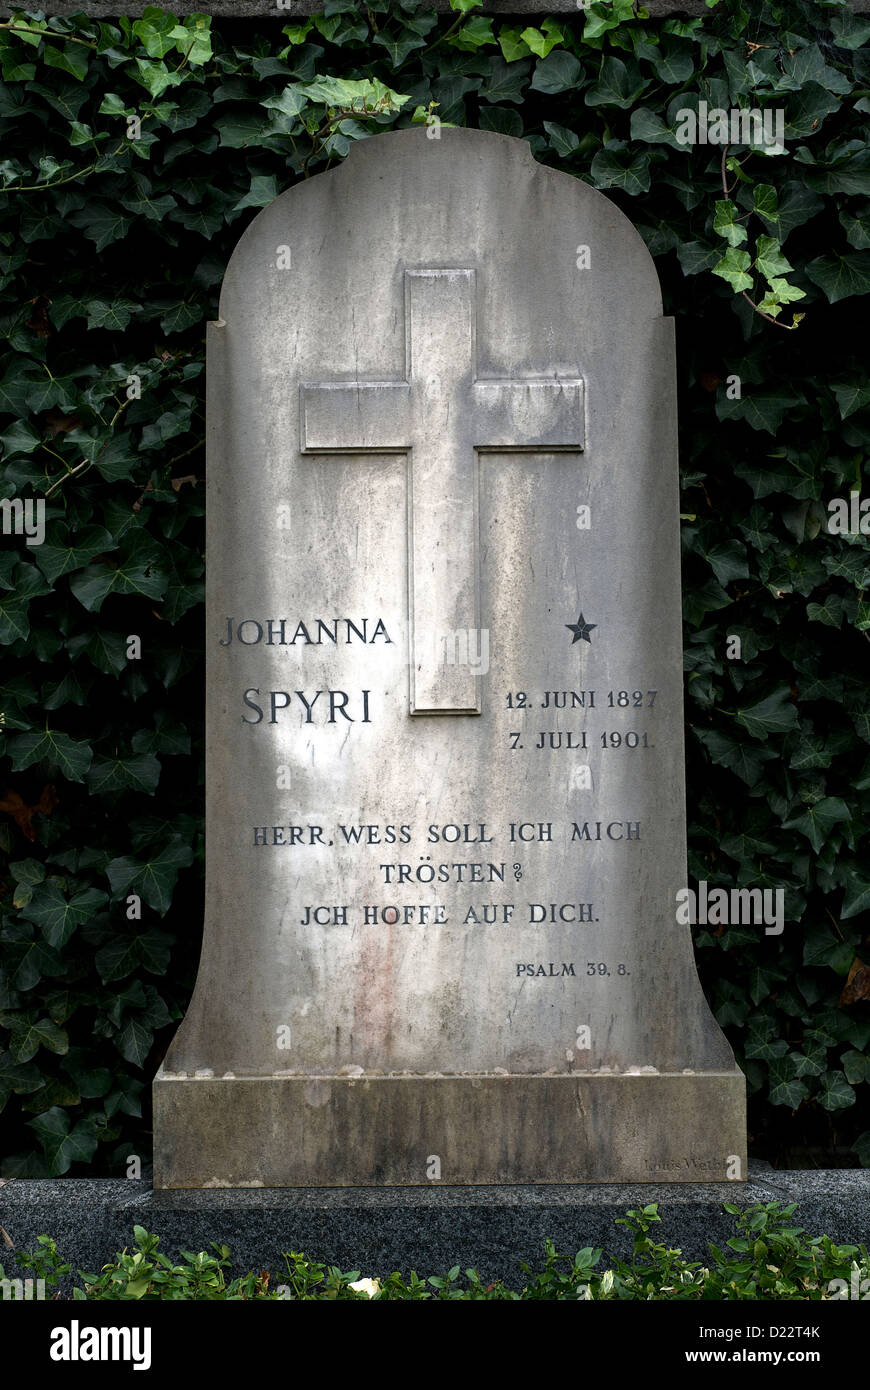 Zurich, Switzerland, the grave of the author Johanna Spyri Stock Photo